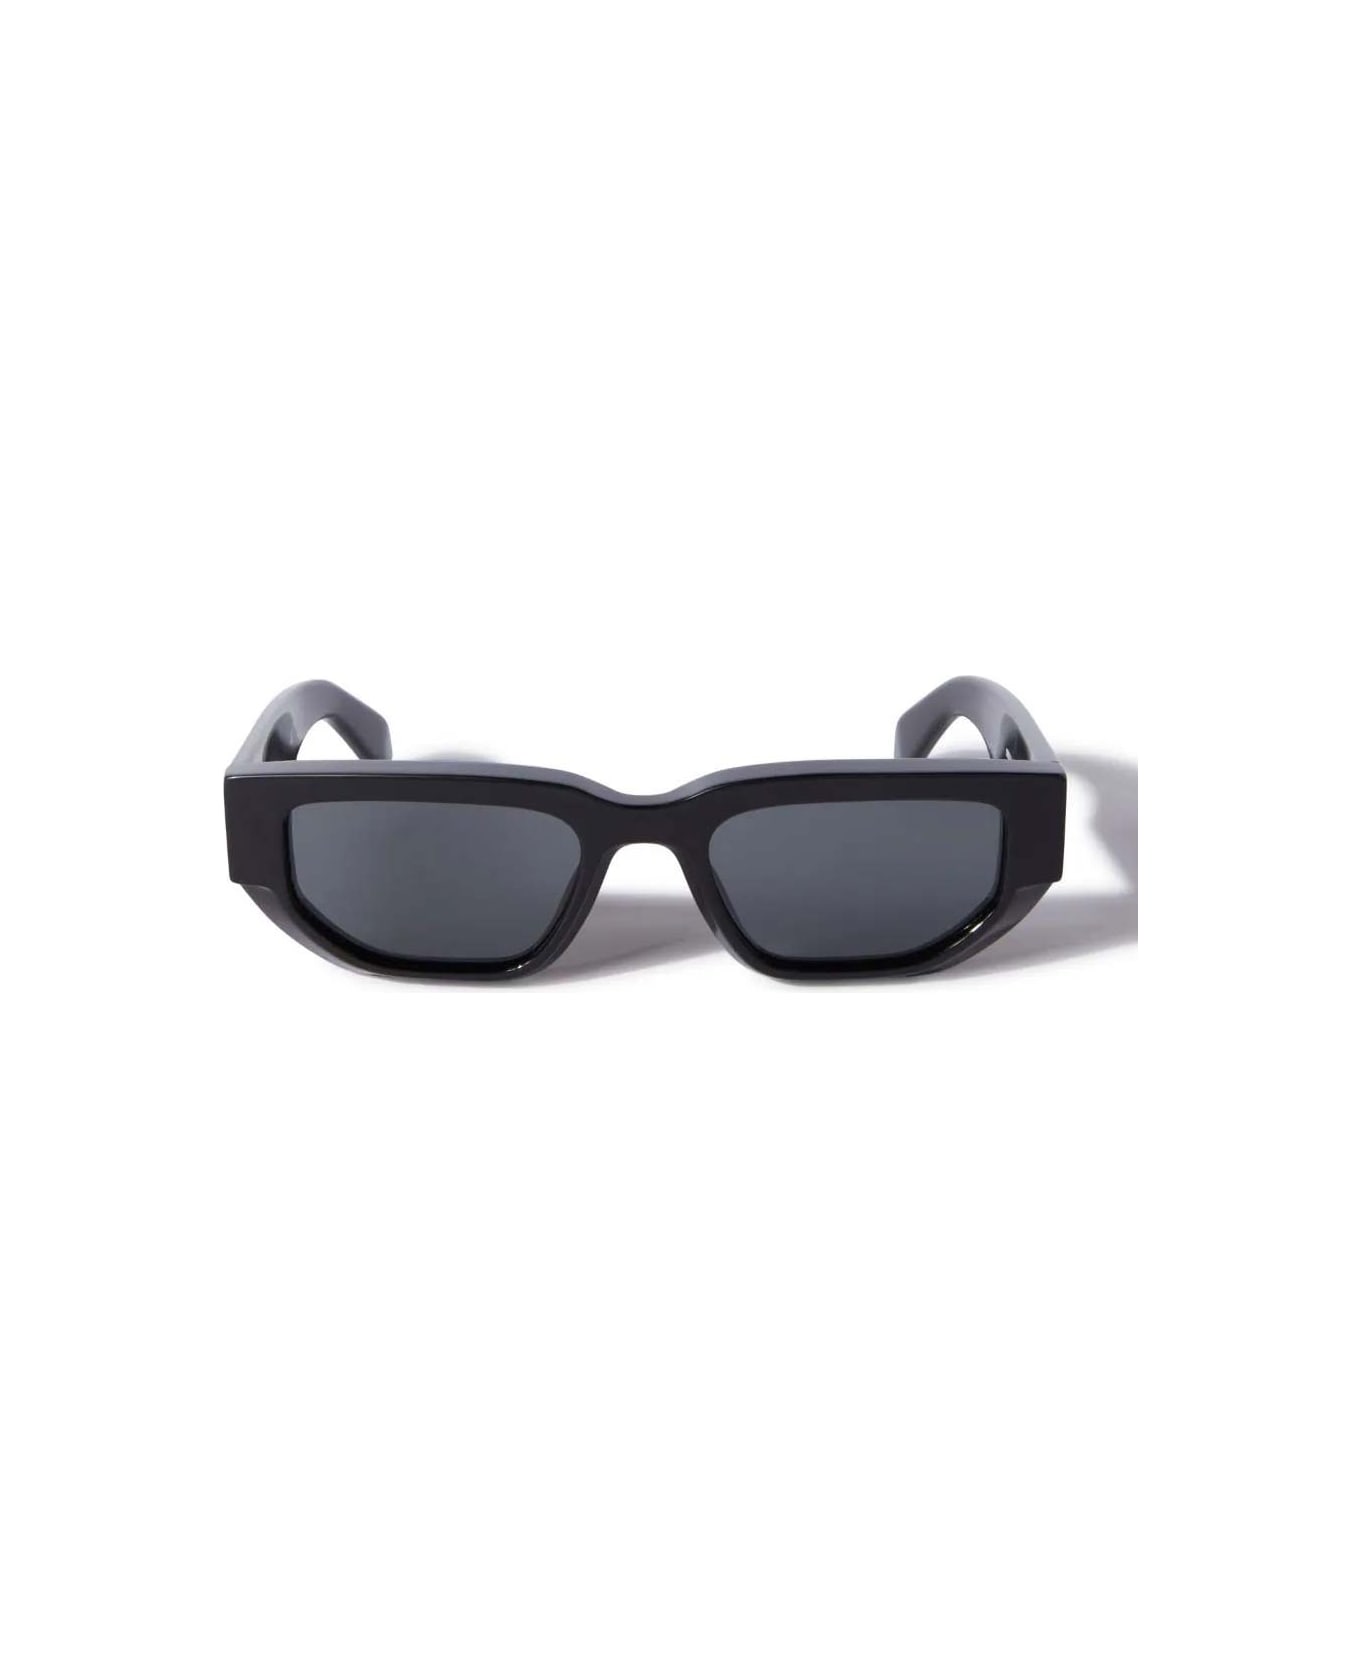 Off-White Sunglasses - Nero/Grigio